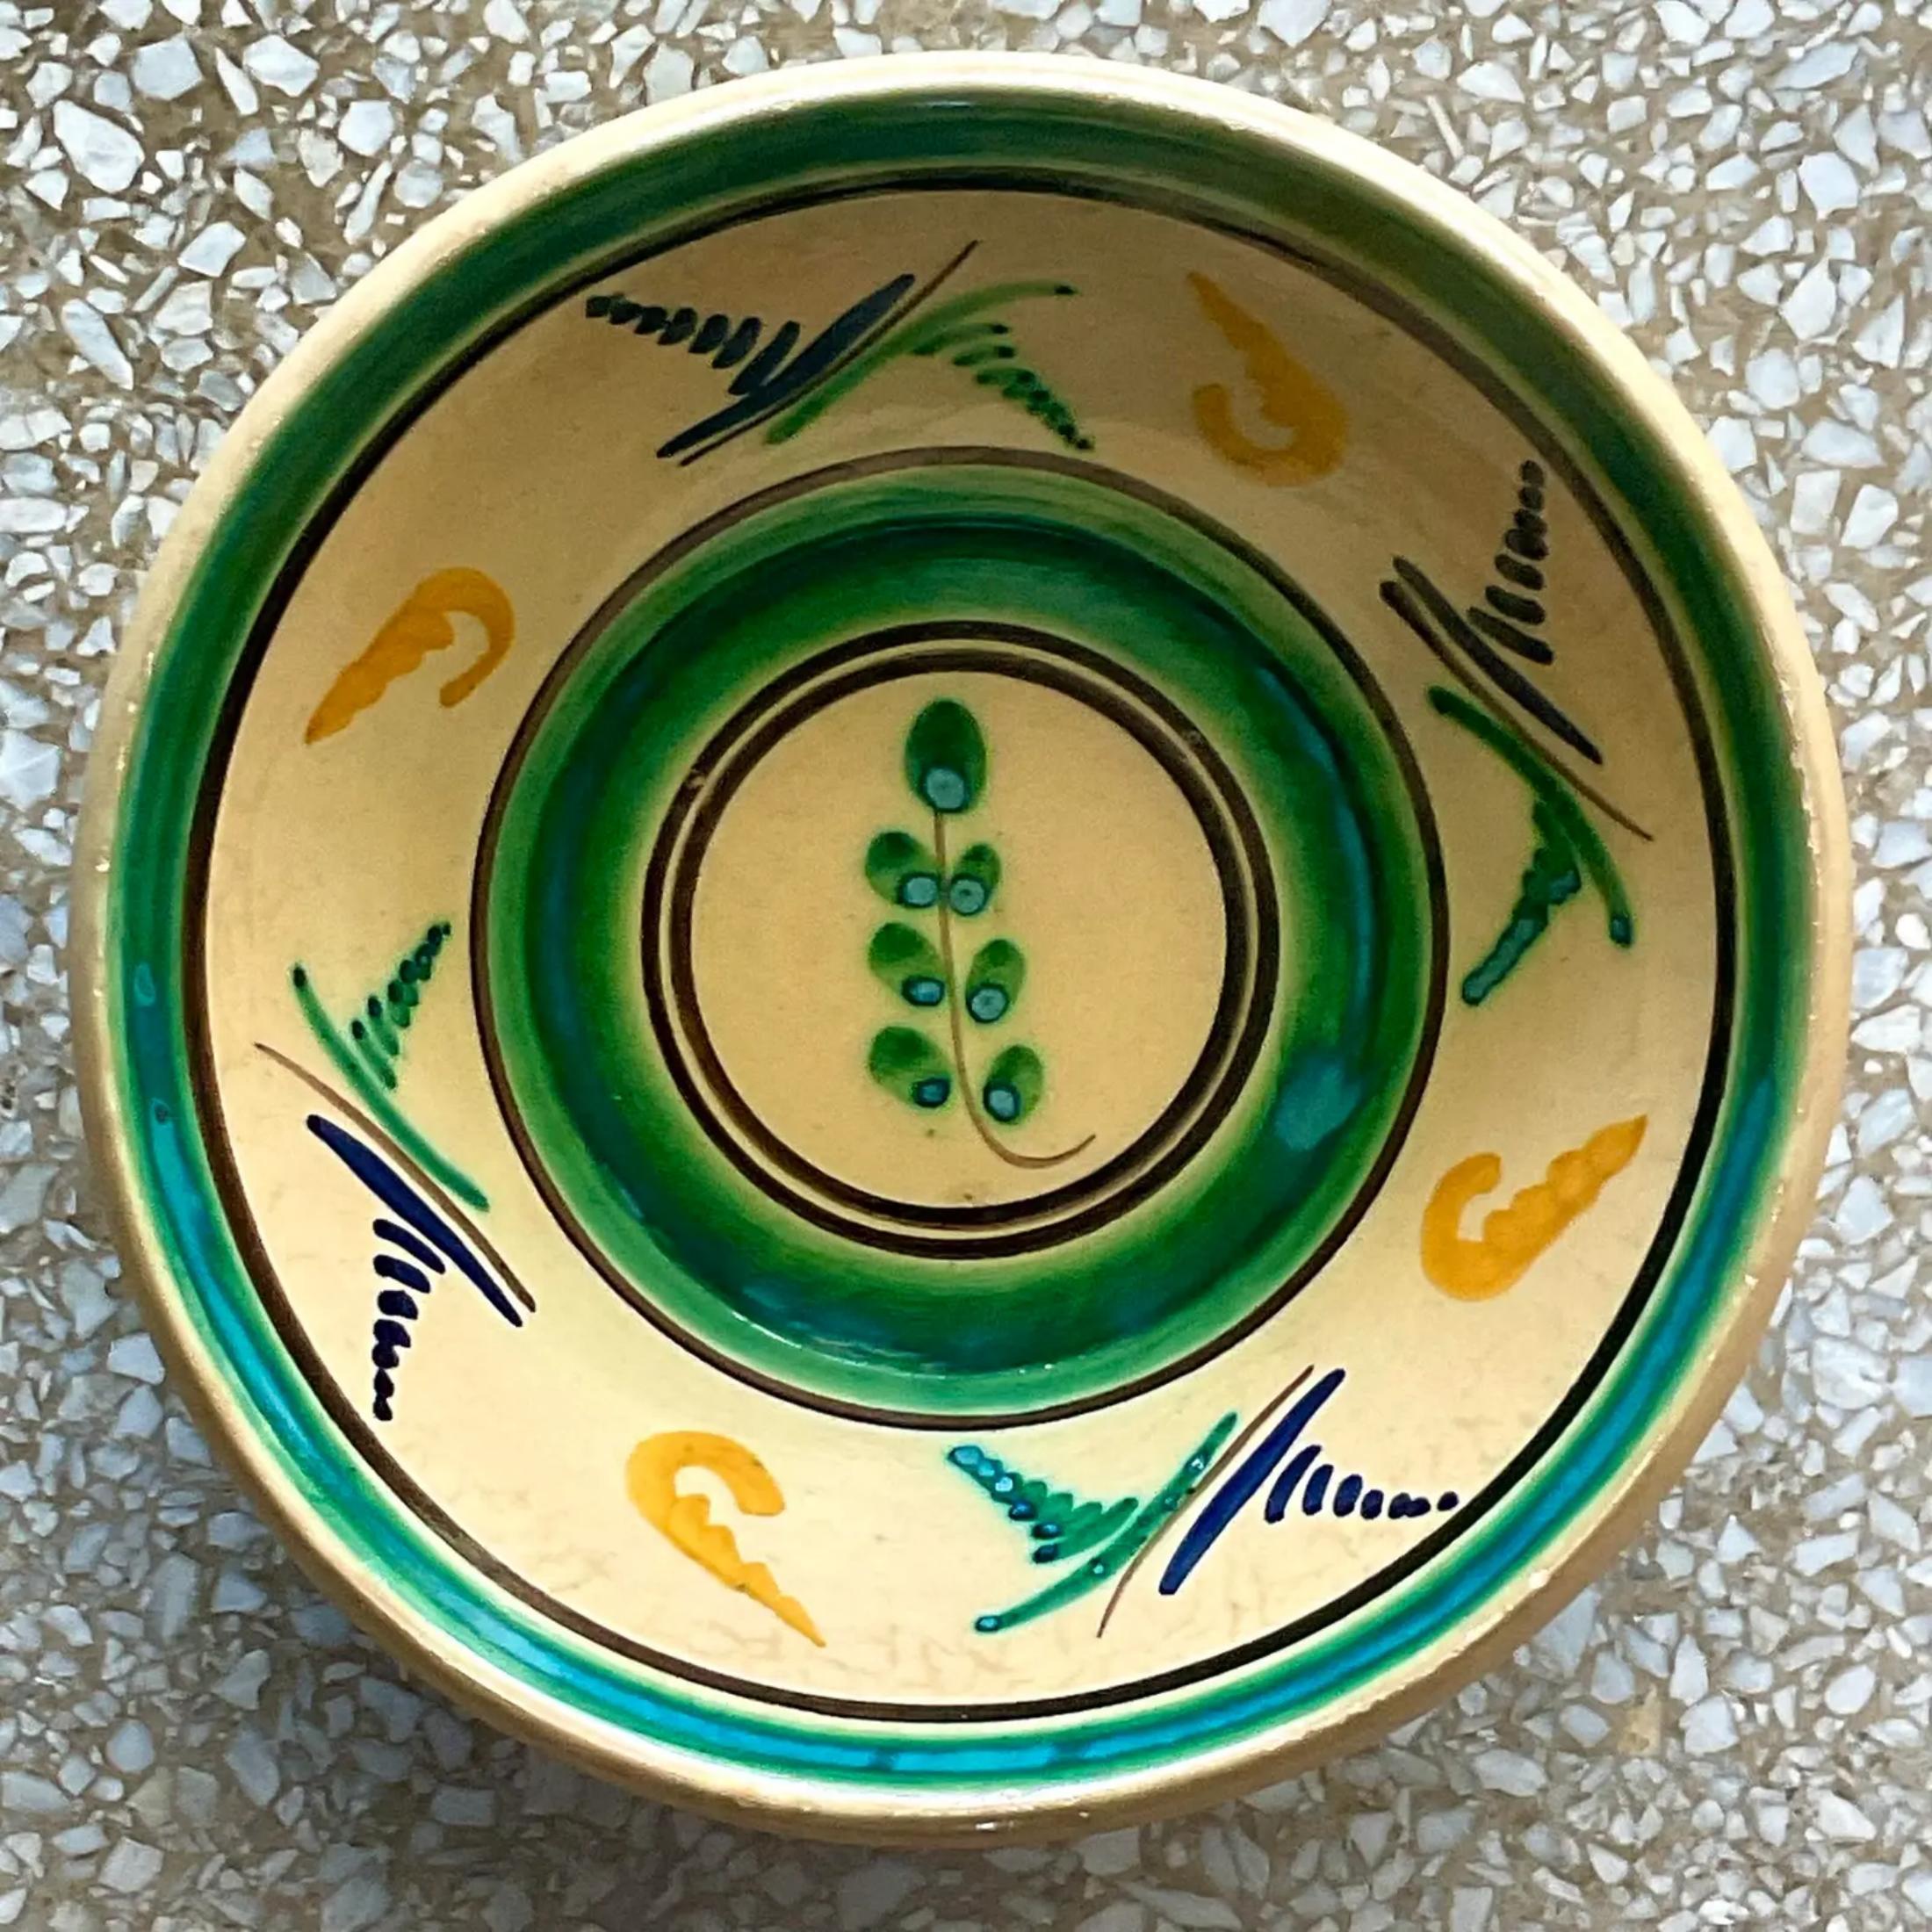 Un superbe bol décoratif Boho vintage. Magnifiques détails peints à la main avec une finition en céramique émaillée. Acquis d'une succession de Palm Beach